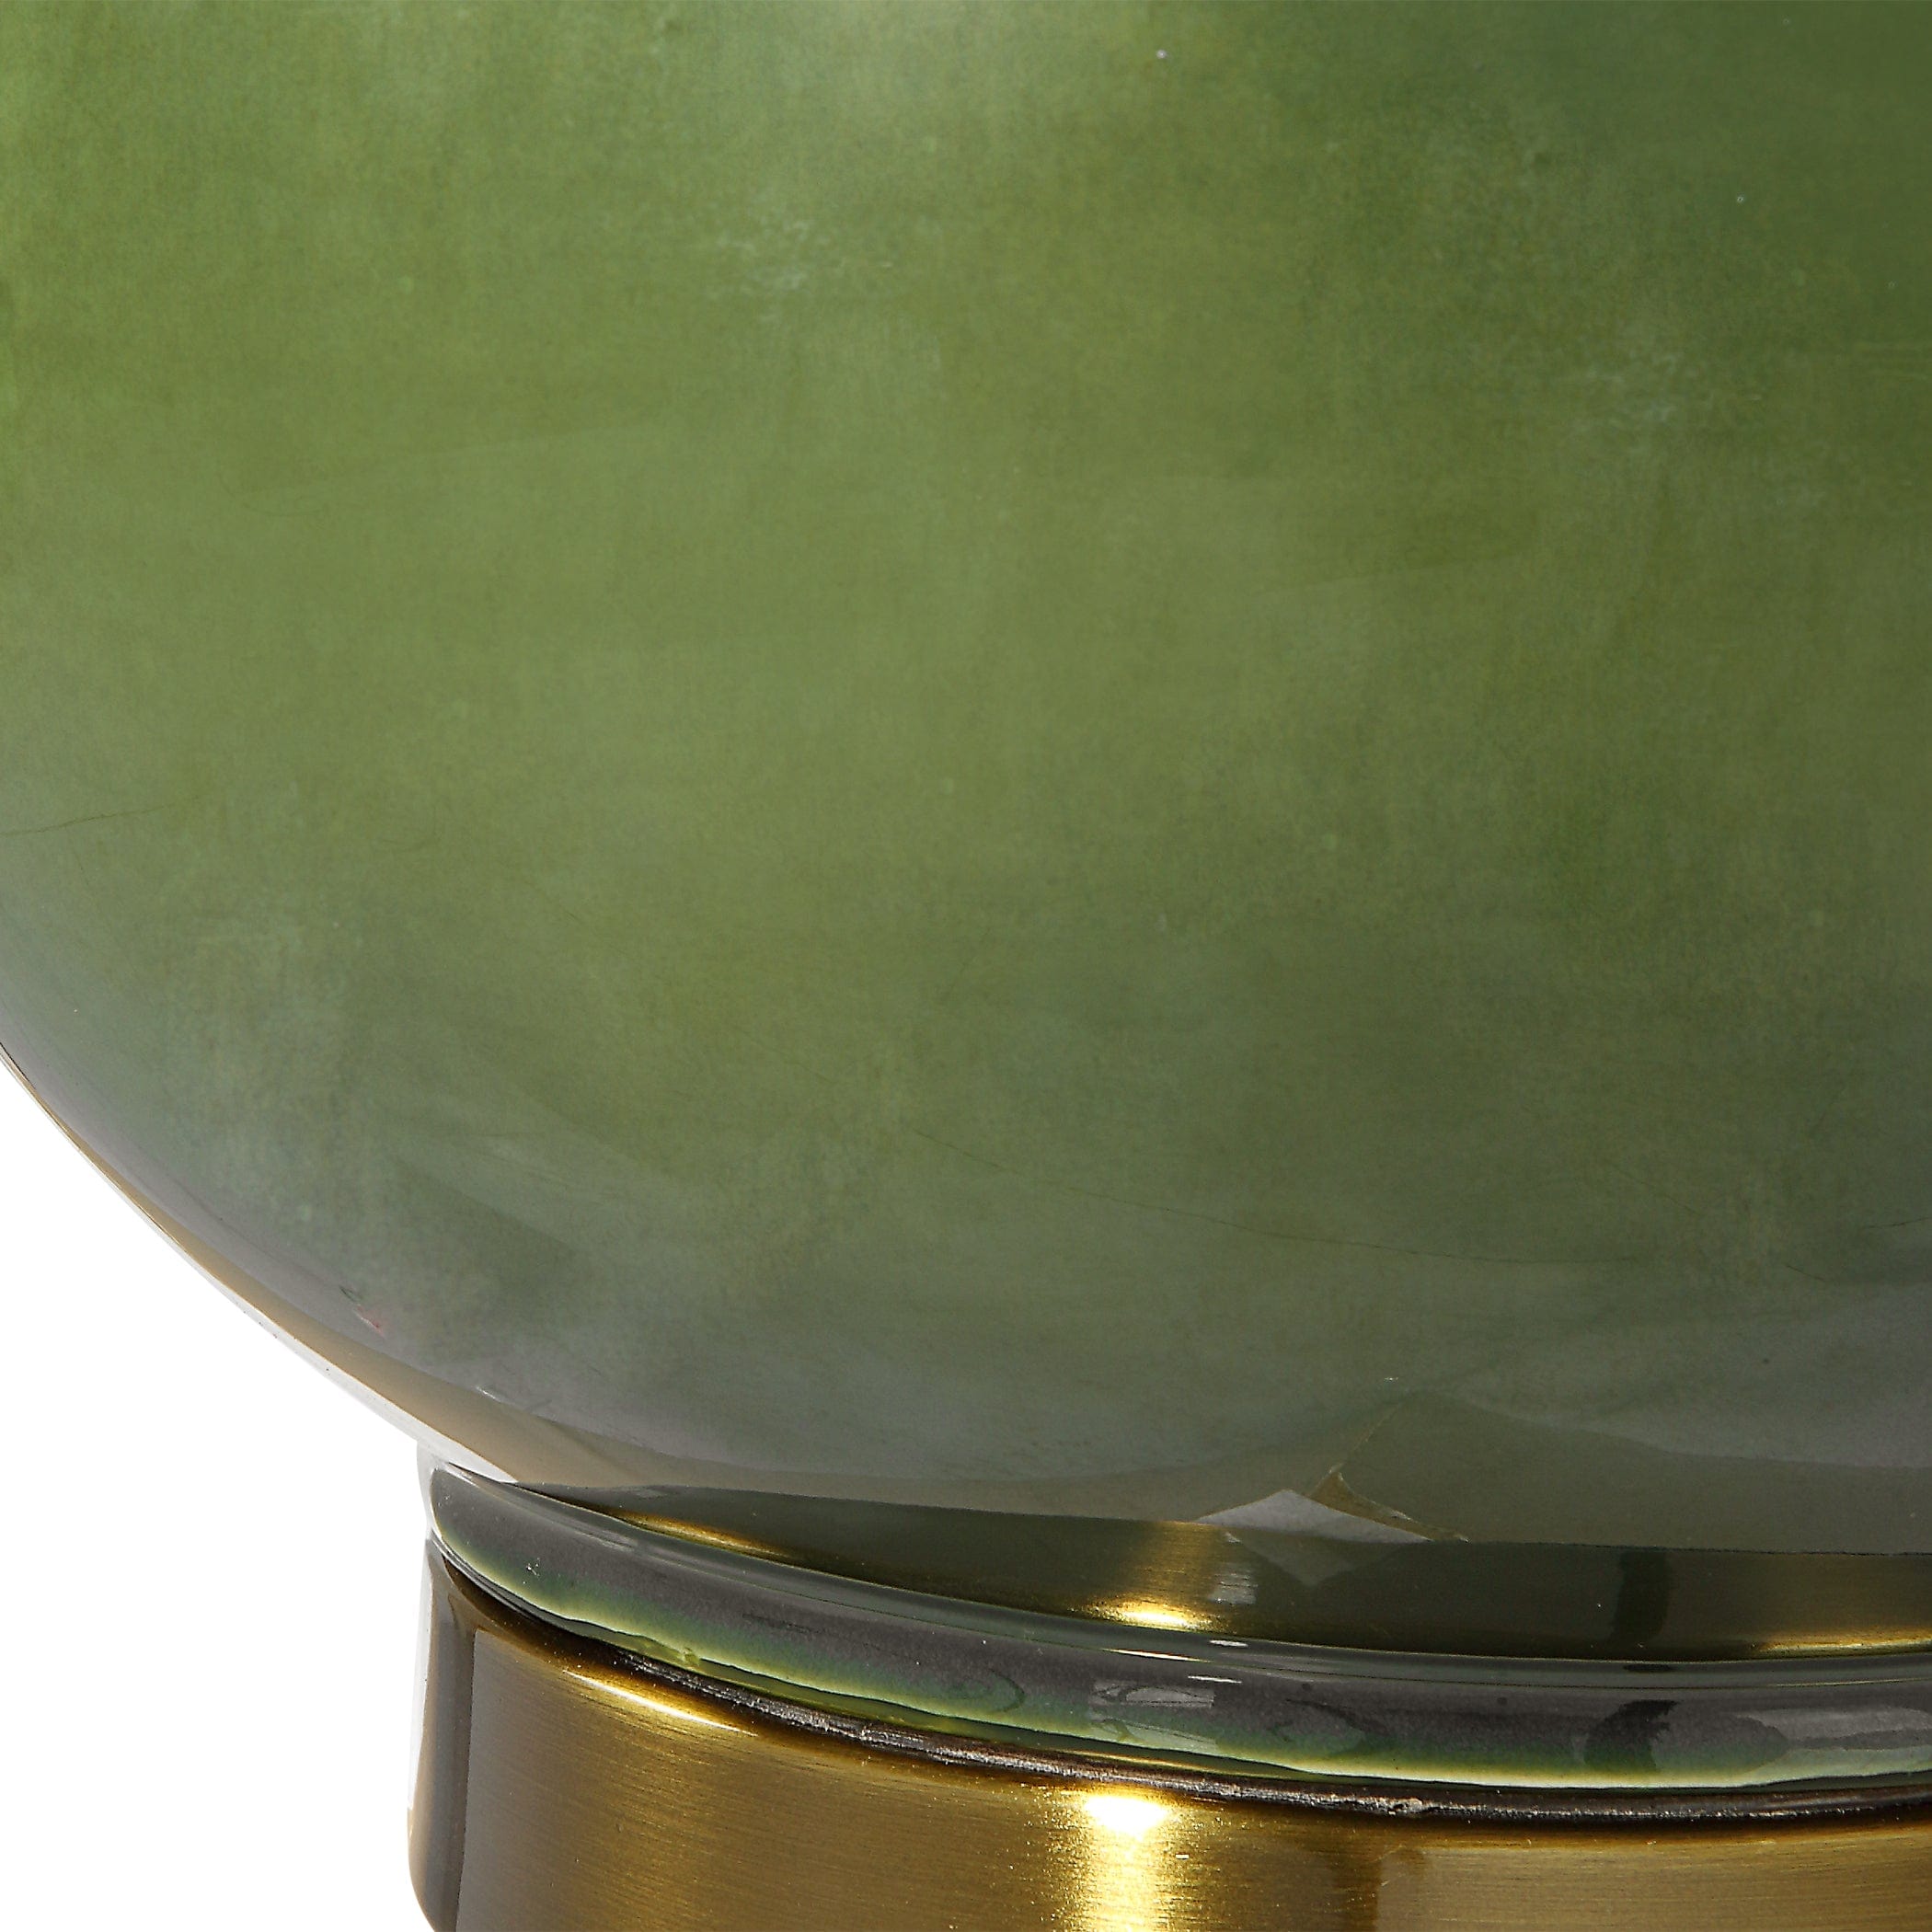 Gourd Green Table Lamp Uttermost